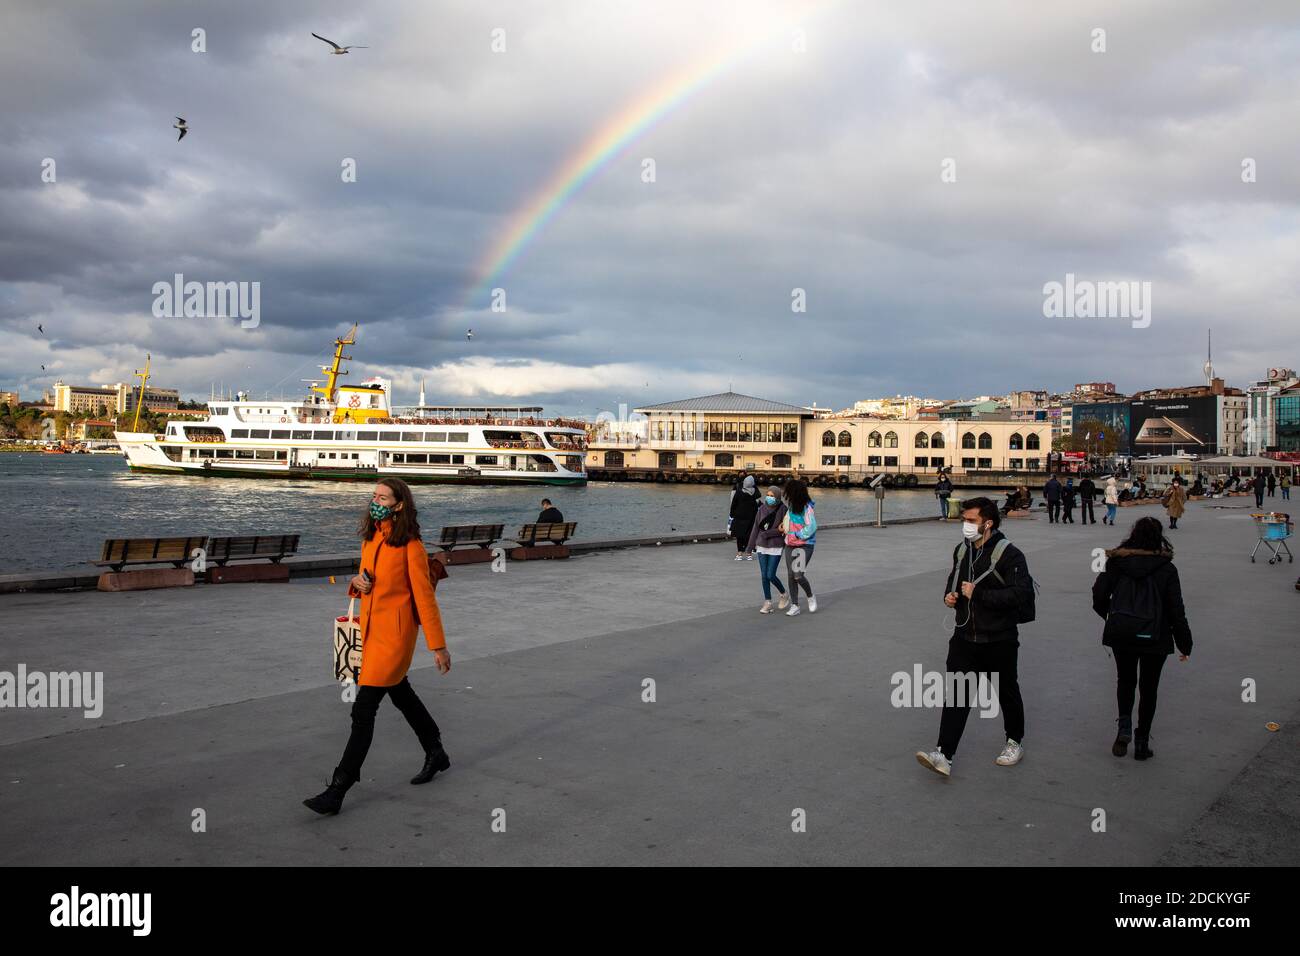 Un arc-en-ciel coloré a été vu sur la côte de Kadikoy après une journée de pluie. Kadikoy est un grand quartier peuplé et cosmopolite de la partie asiatique d'Istanbul Banque D'Images